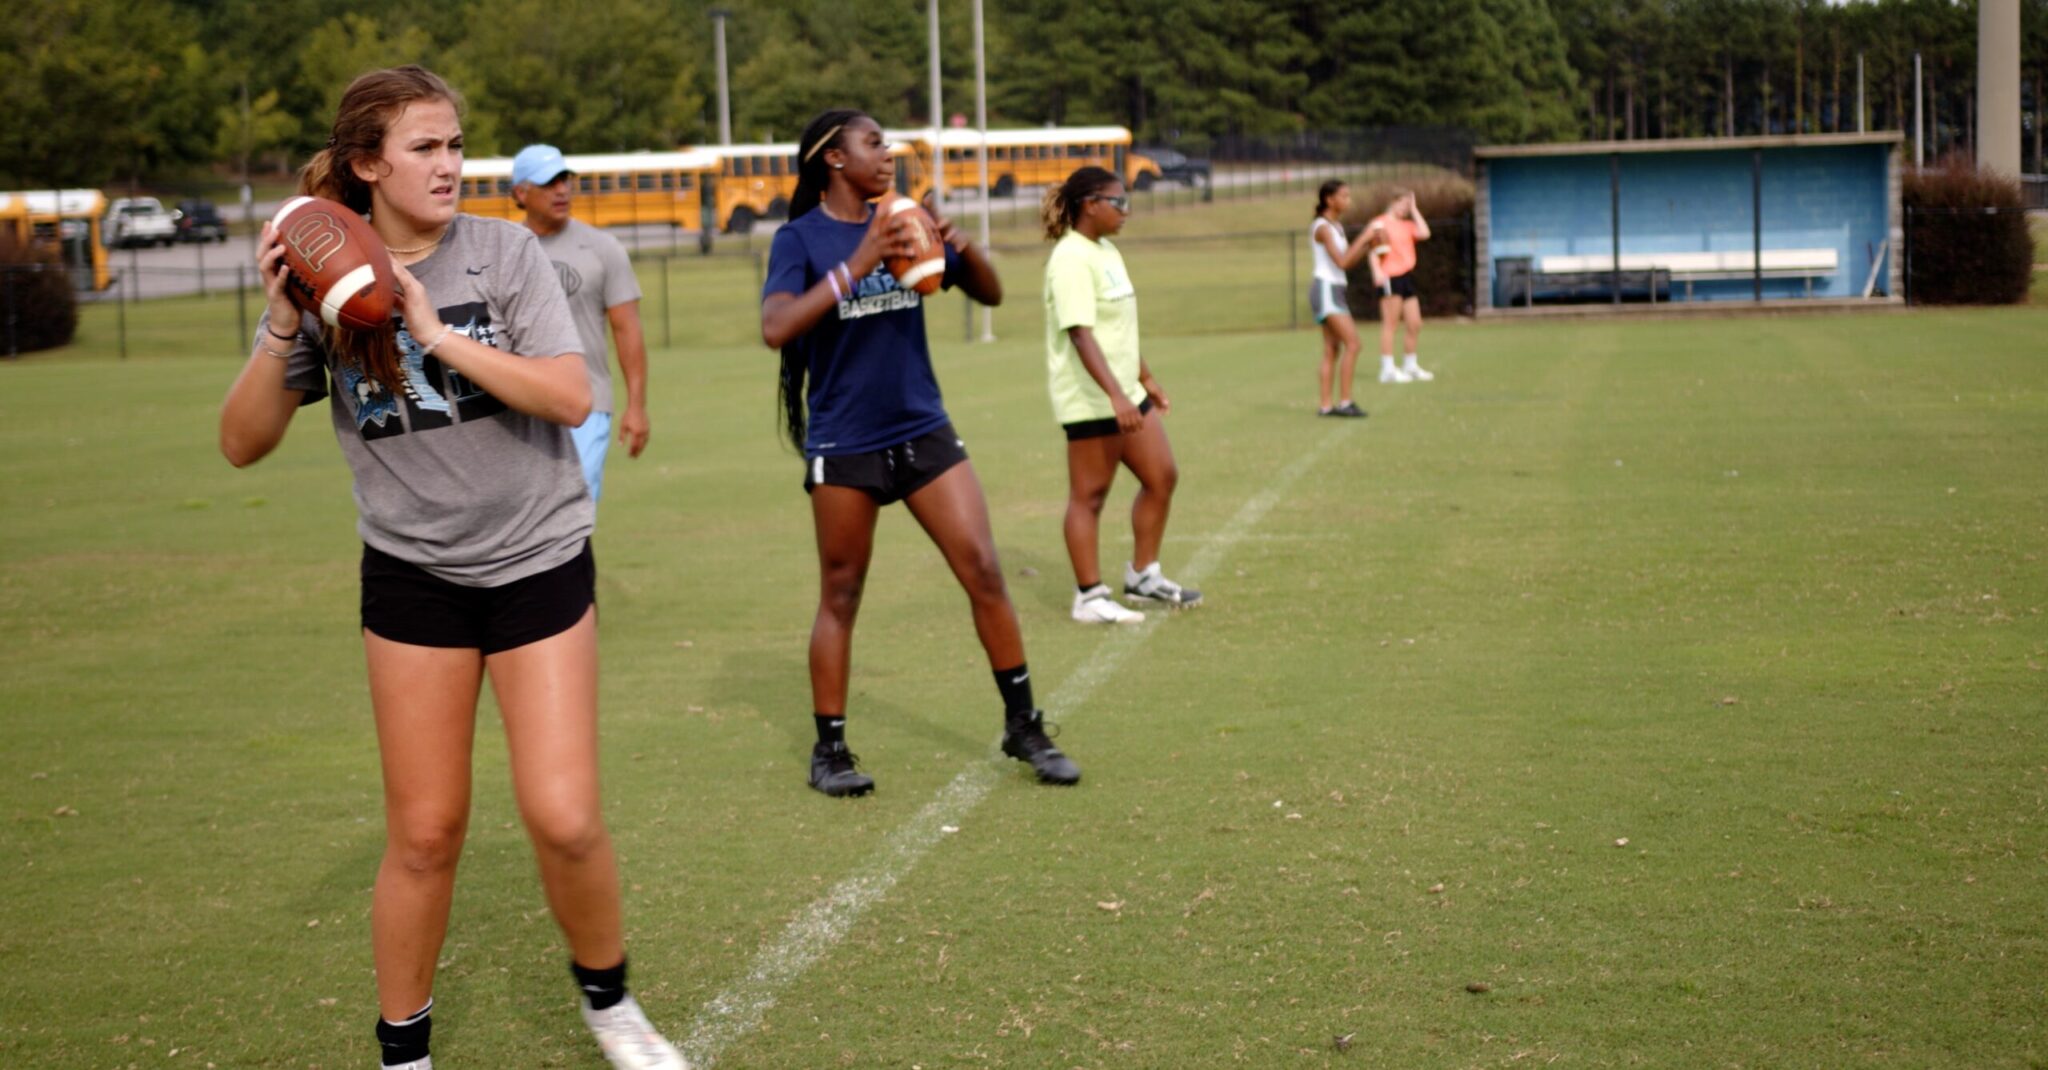 Girls’ Flag Football set to kickoff inaugural season at dozens of Alabama high schools this fall